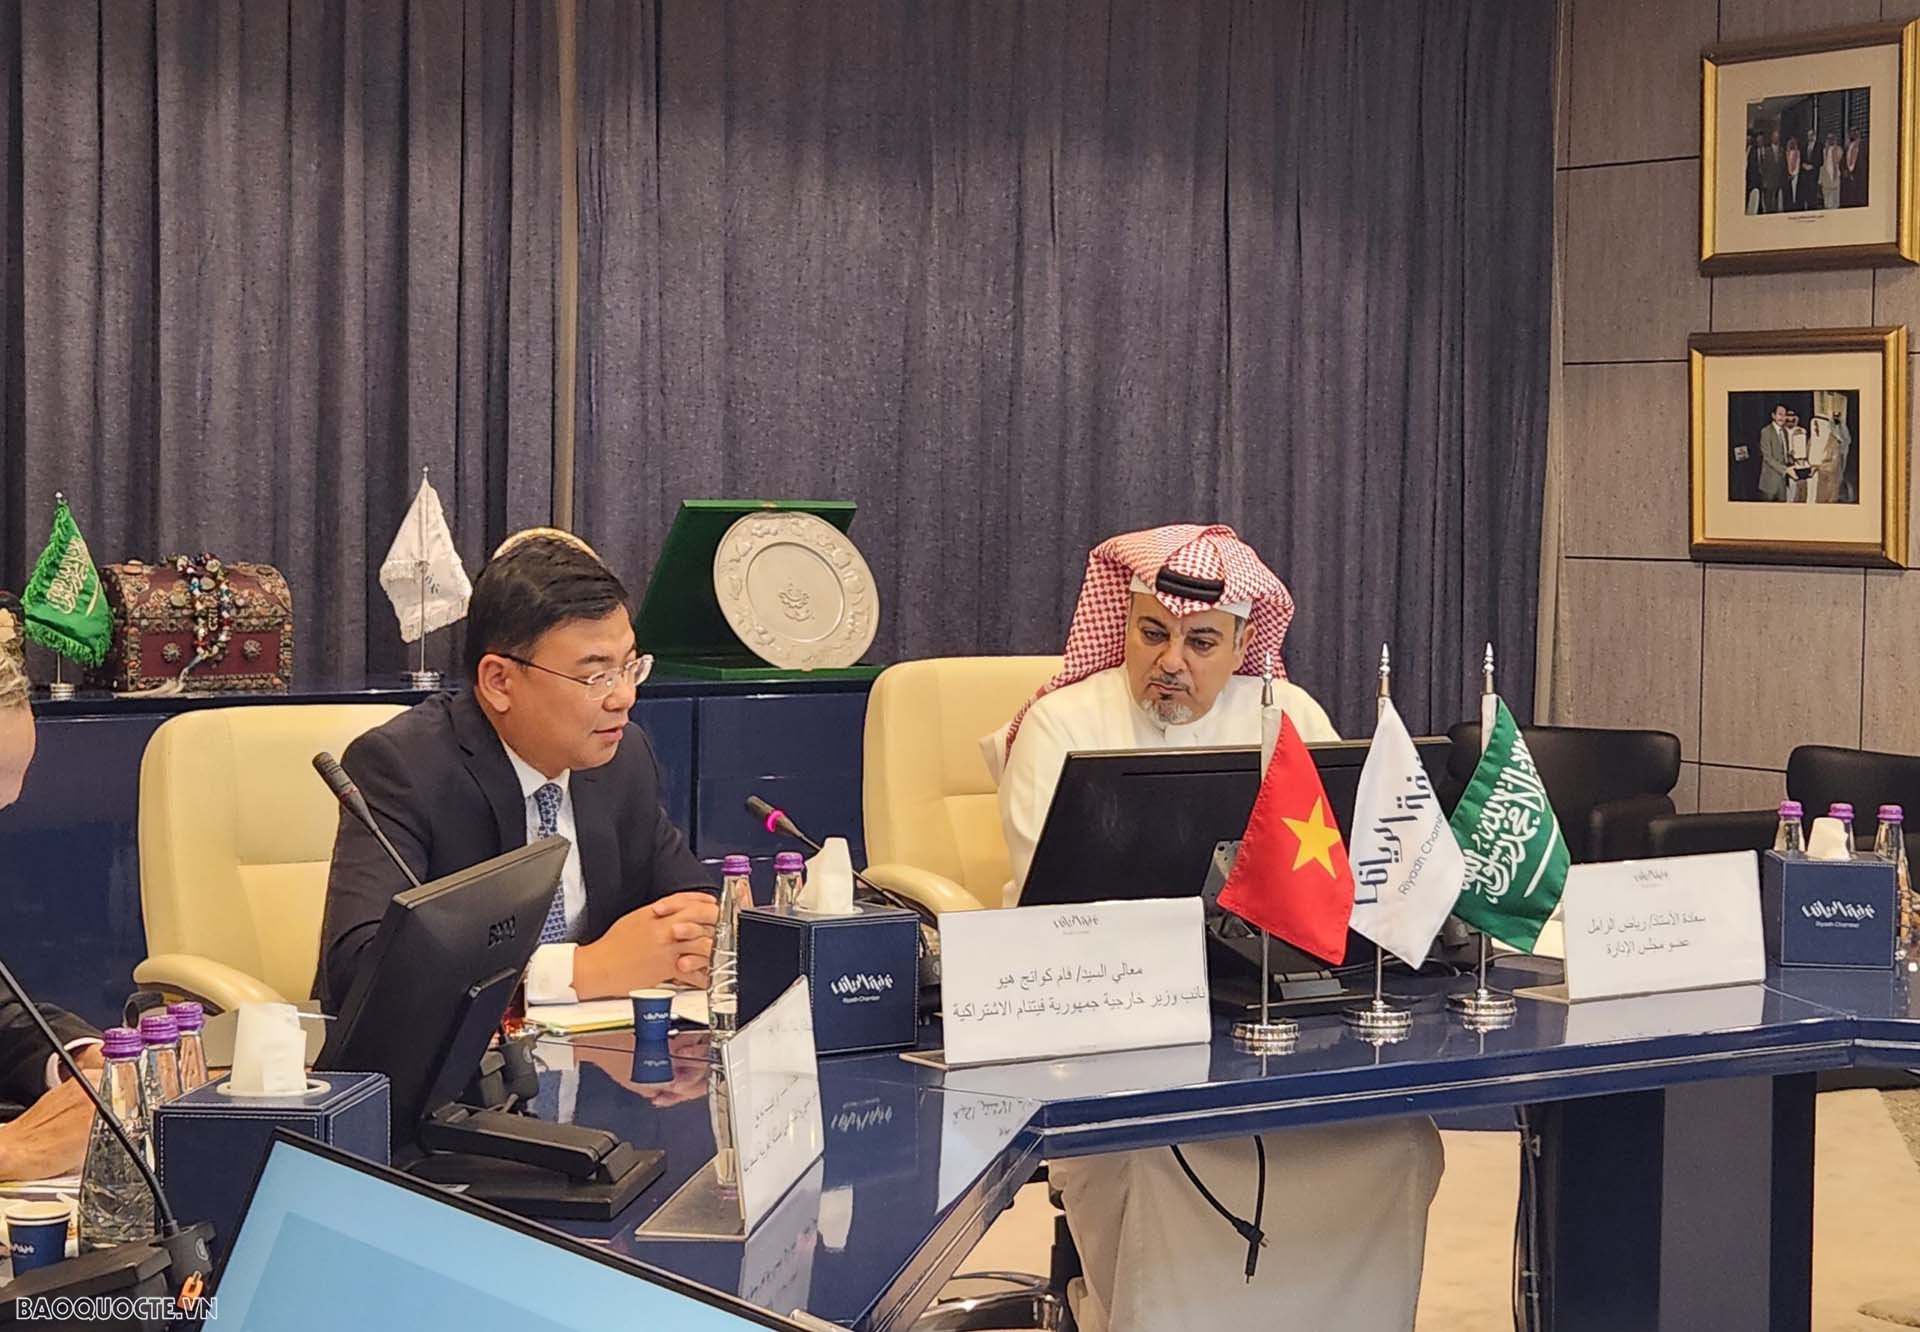 Thứ trưởng Phạm Quang Hiệu làm việc với Chủ tịch Ủy ban Doanh nhân Phòng Thương mại và Công nghiệp Riyadh Riyadh bin Hamad Al-Zamil.